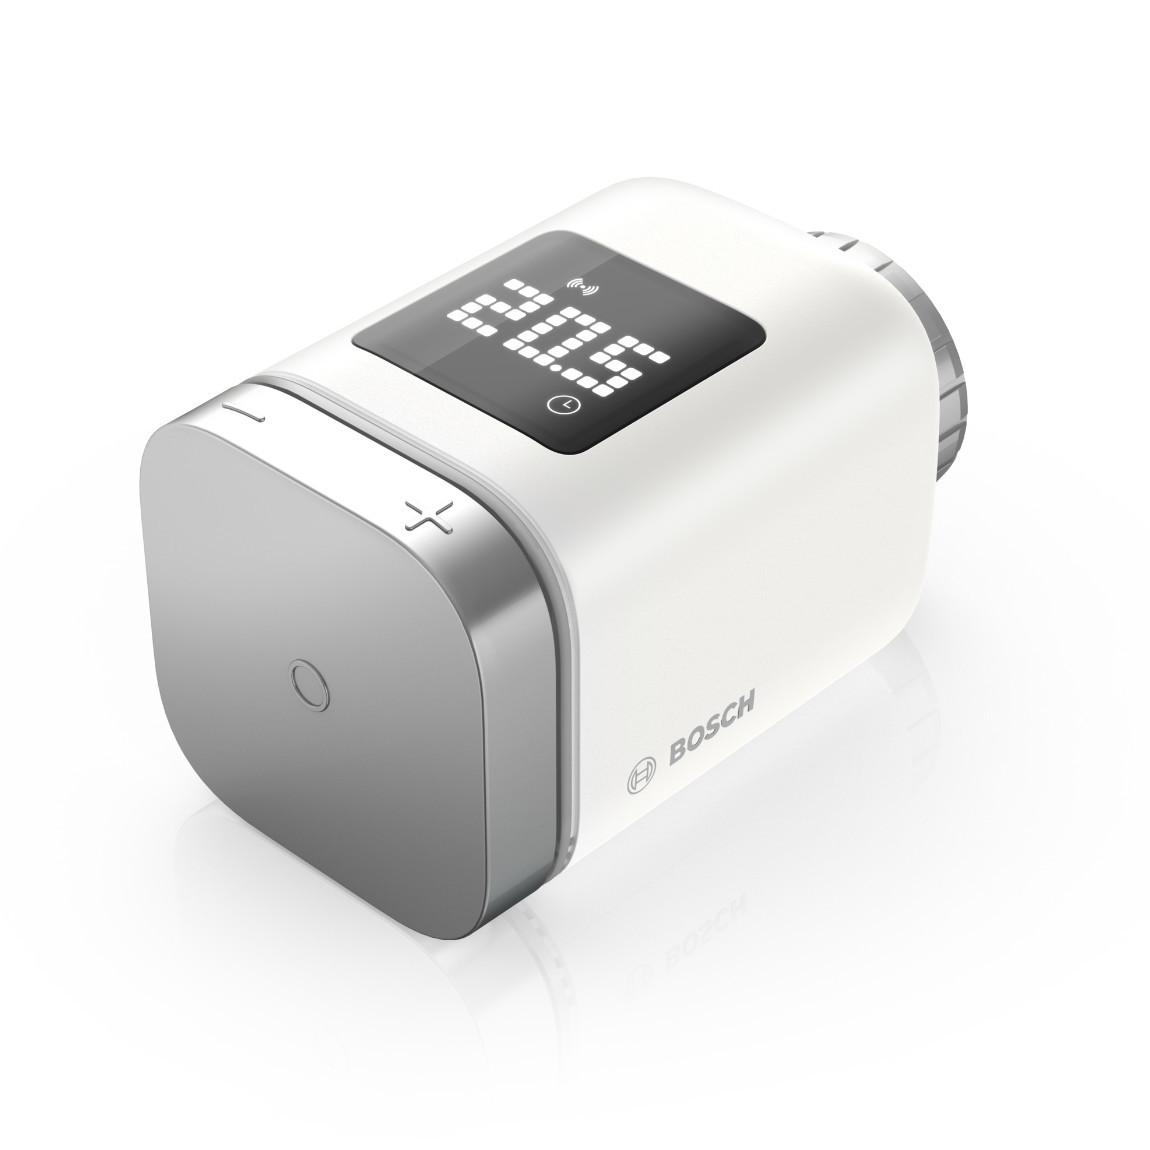 Bosch Starter-Set Heizen II + Google Nest Hub (Gen 2)_schräg_Thermostat